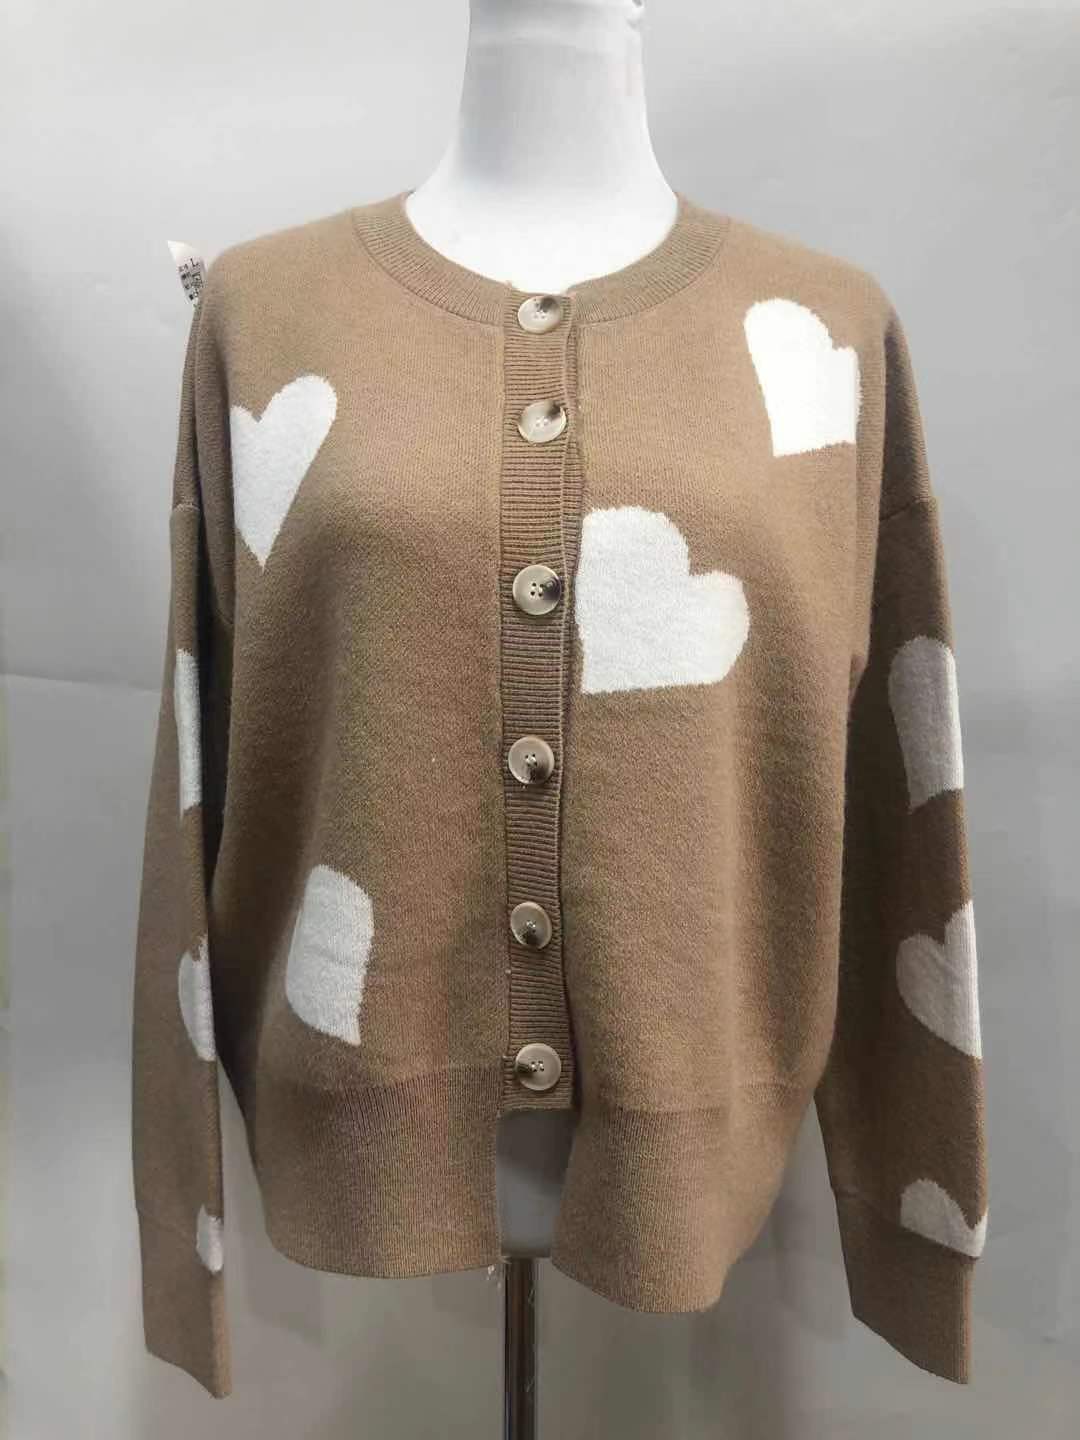 Women's Heart Sweater Single Breasted Cardigan Knitwear Coat Outwear